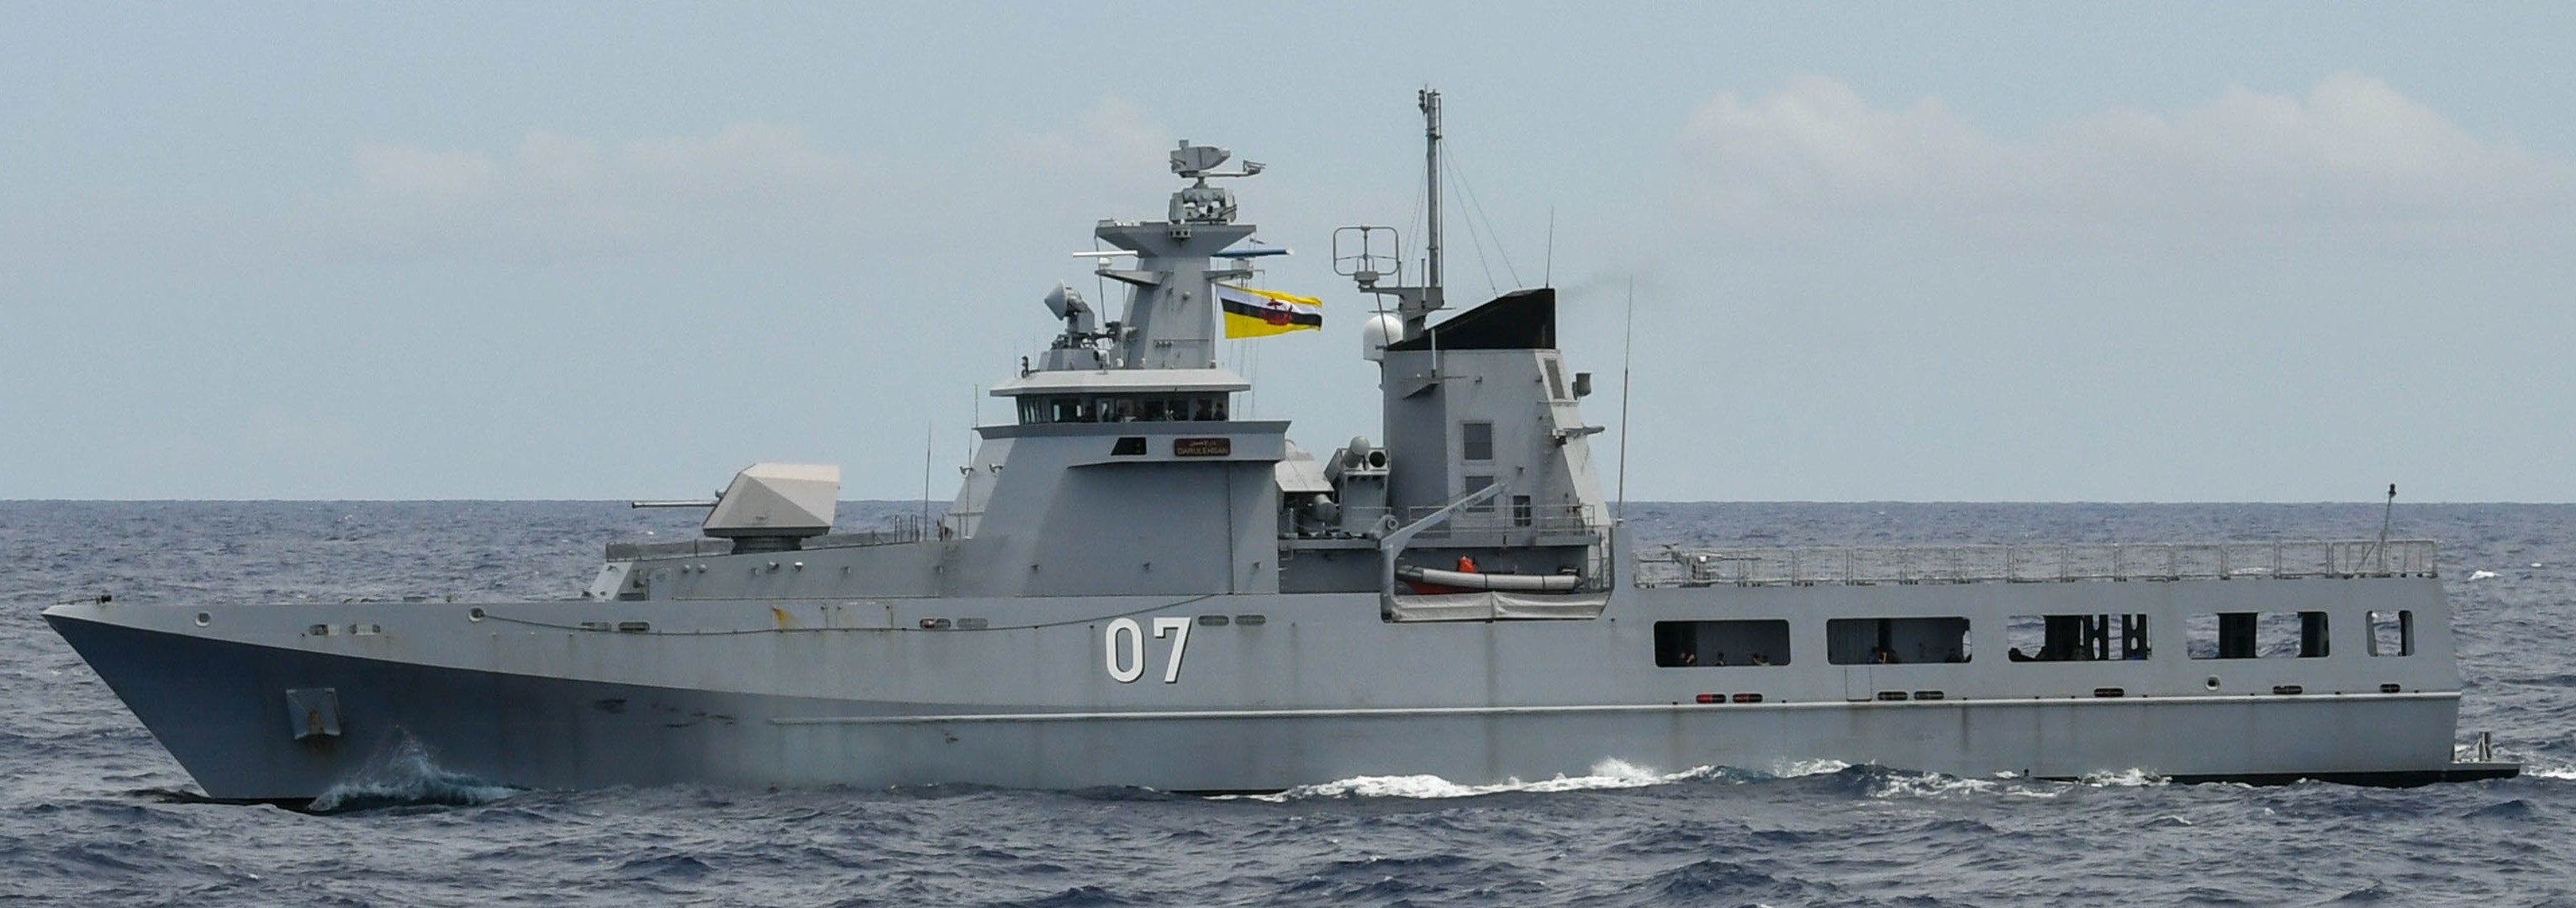 opv 07 kdb darulehsan offshore patrol vessel darussalem class royal brunei navy 06